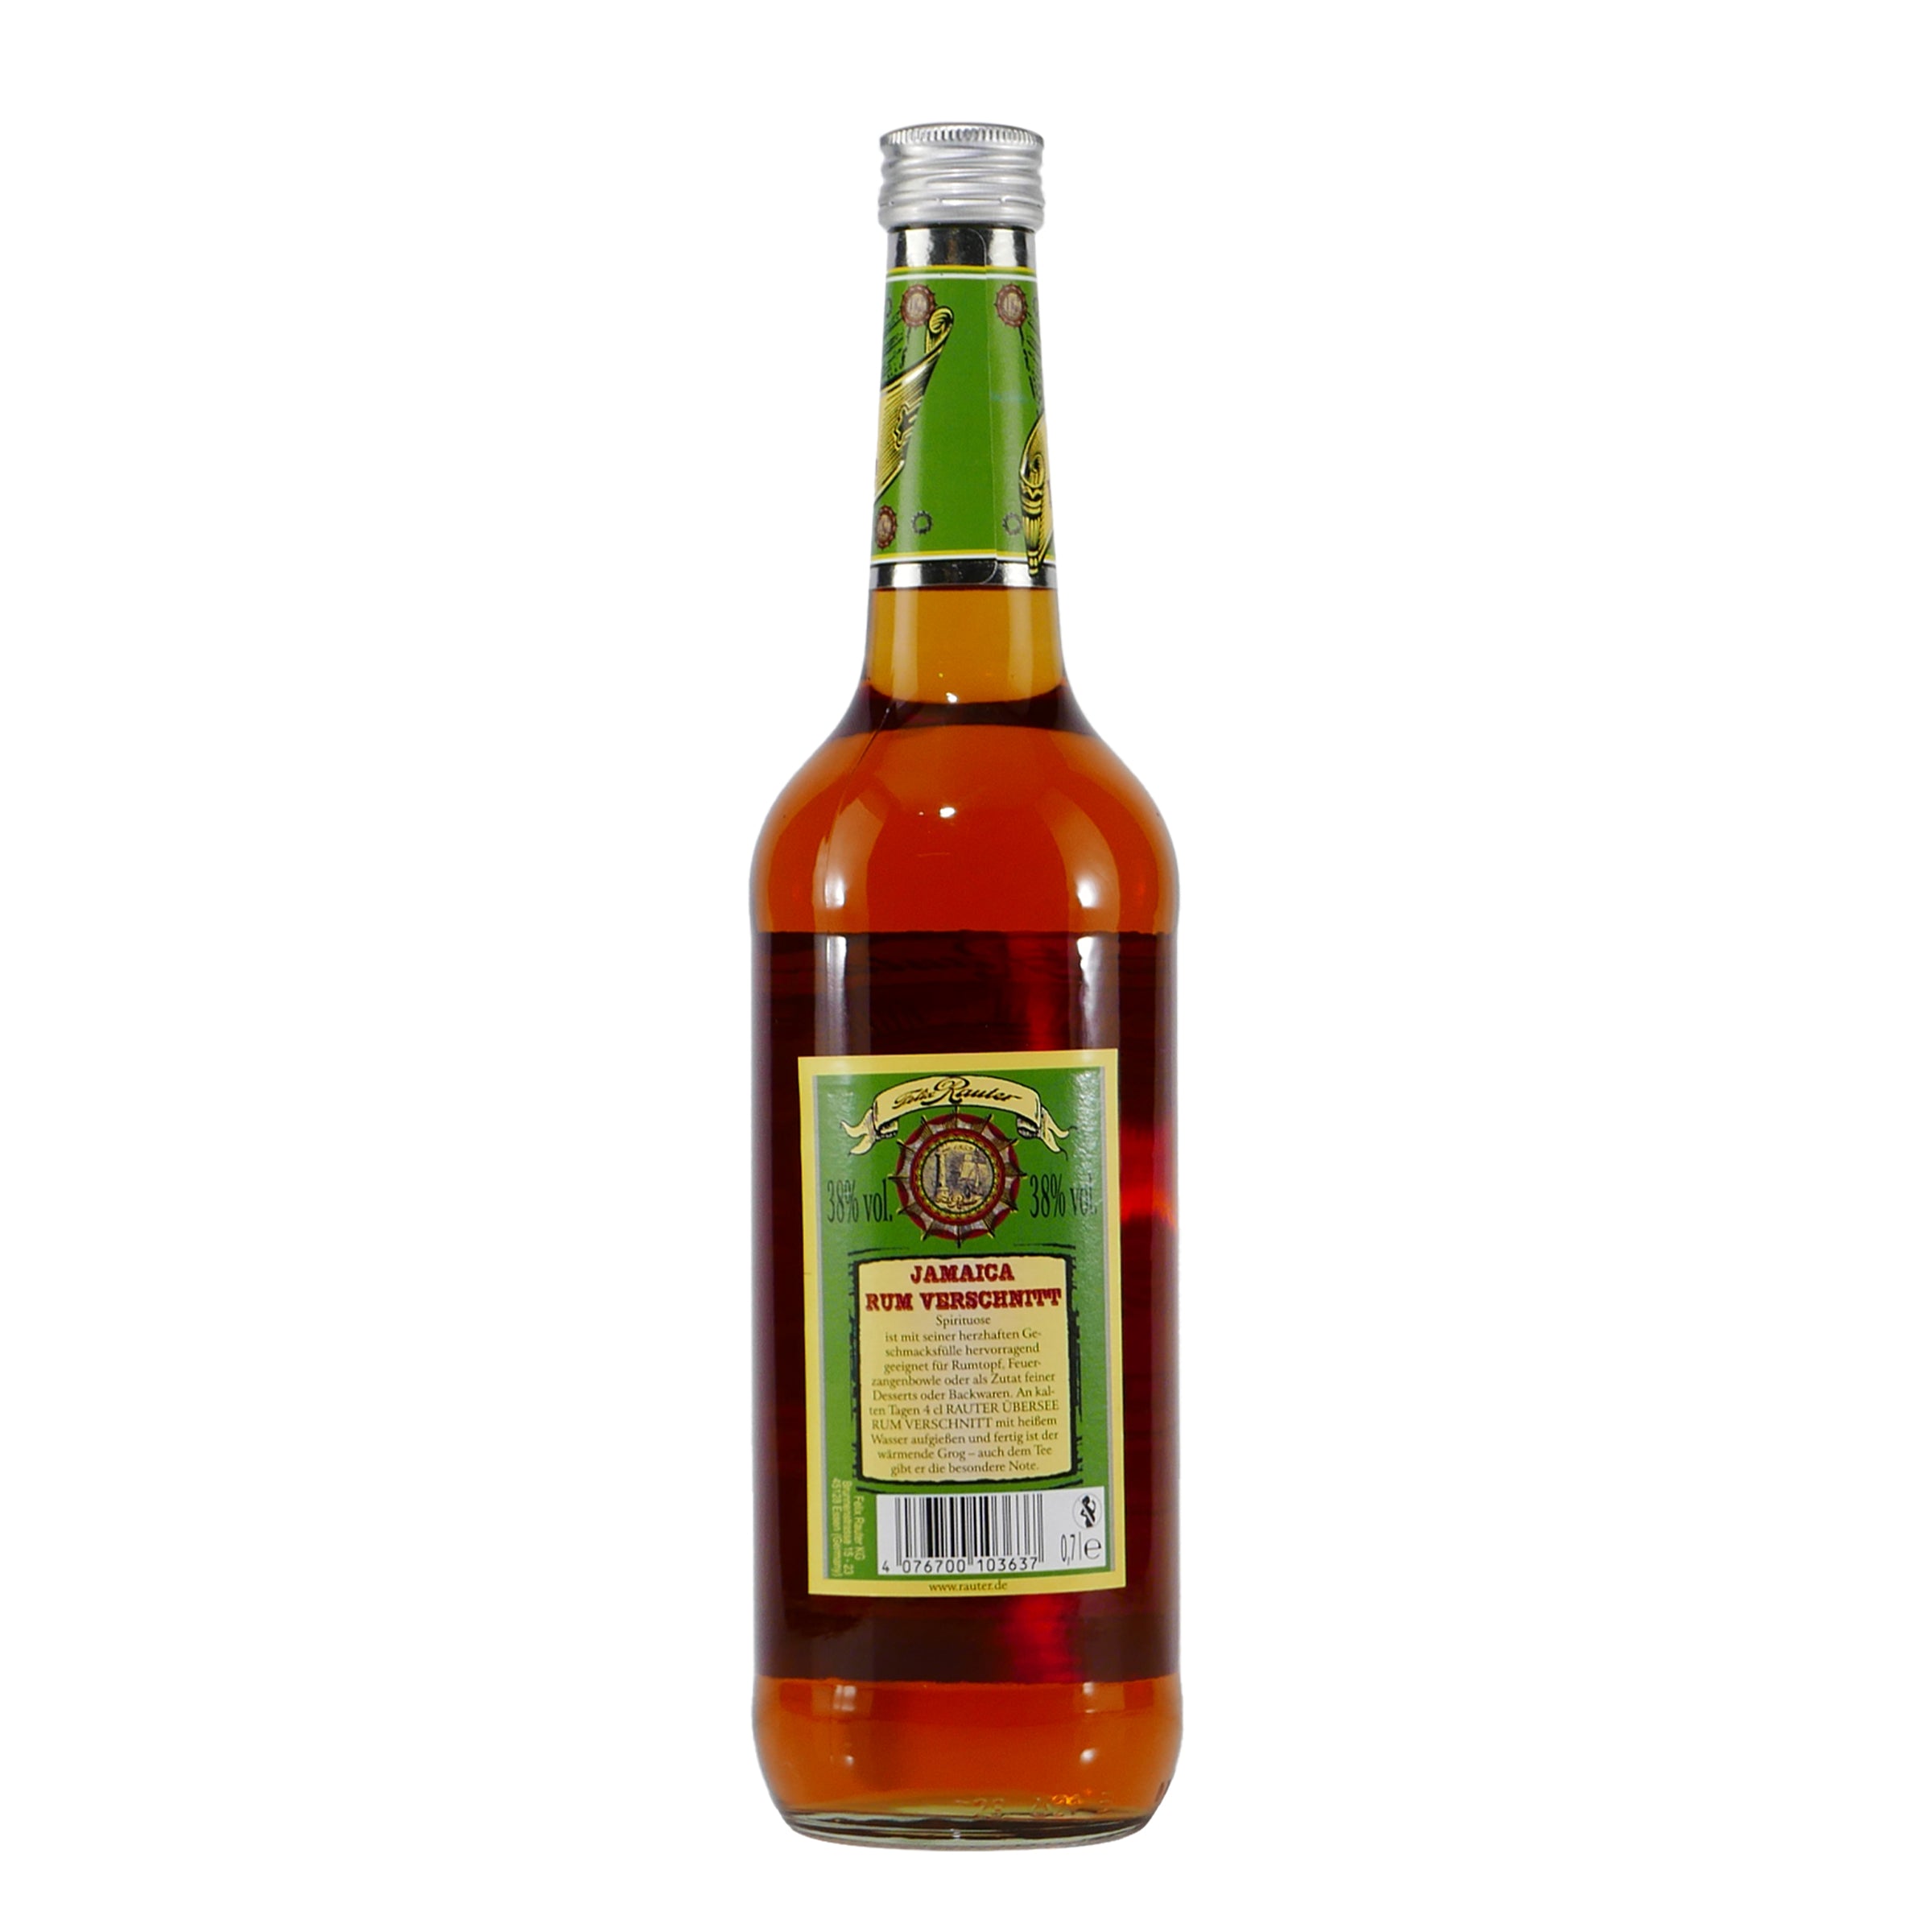 Rauter Jamaica Rum Verschnitt 0,7L